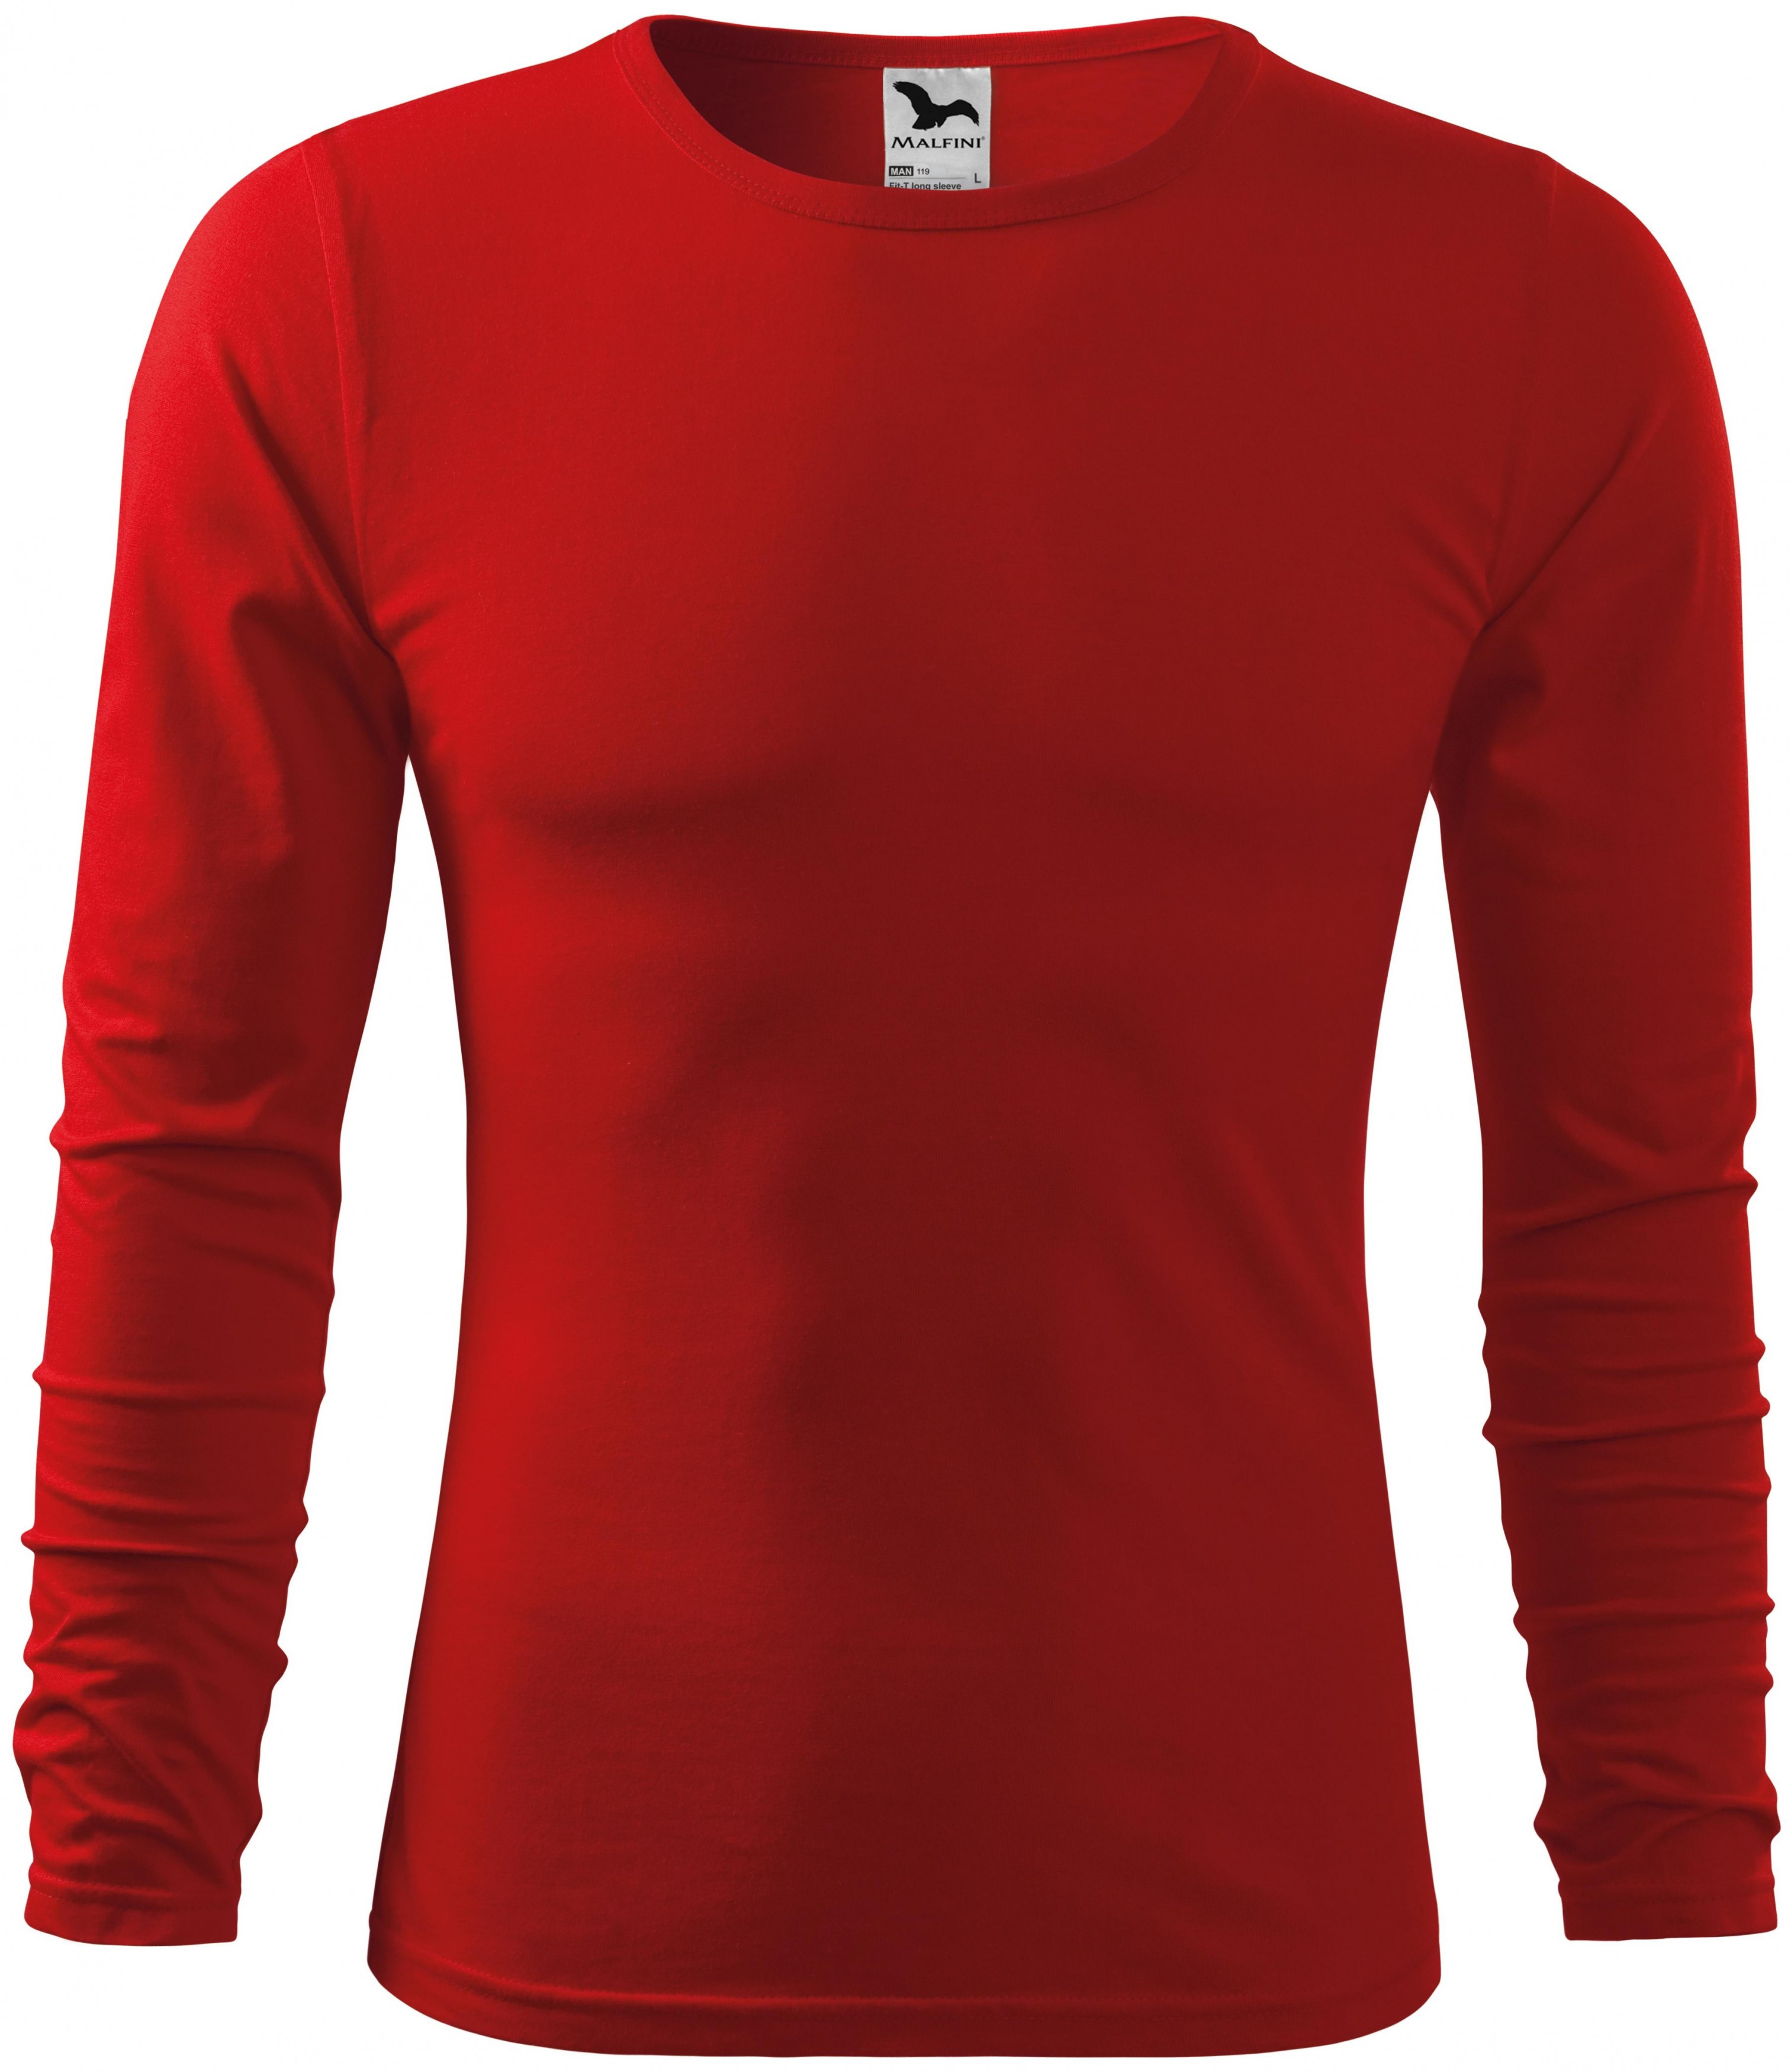 Koche Baumwolle T-shirts in Rot für Herren Herren Bekleidung T-Shirts Langarm T-Shirts 